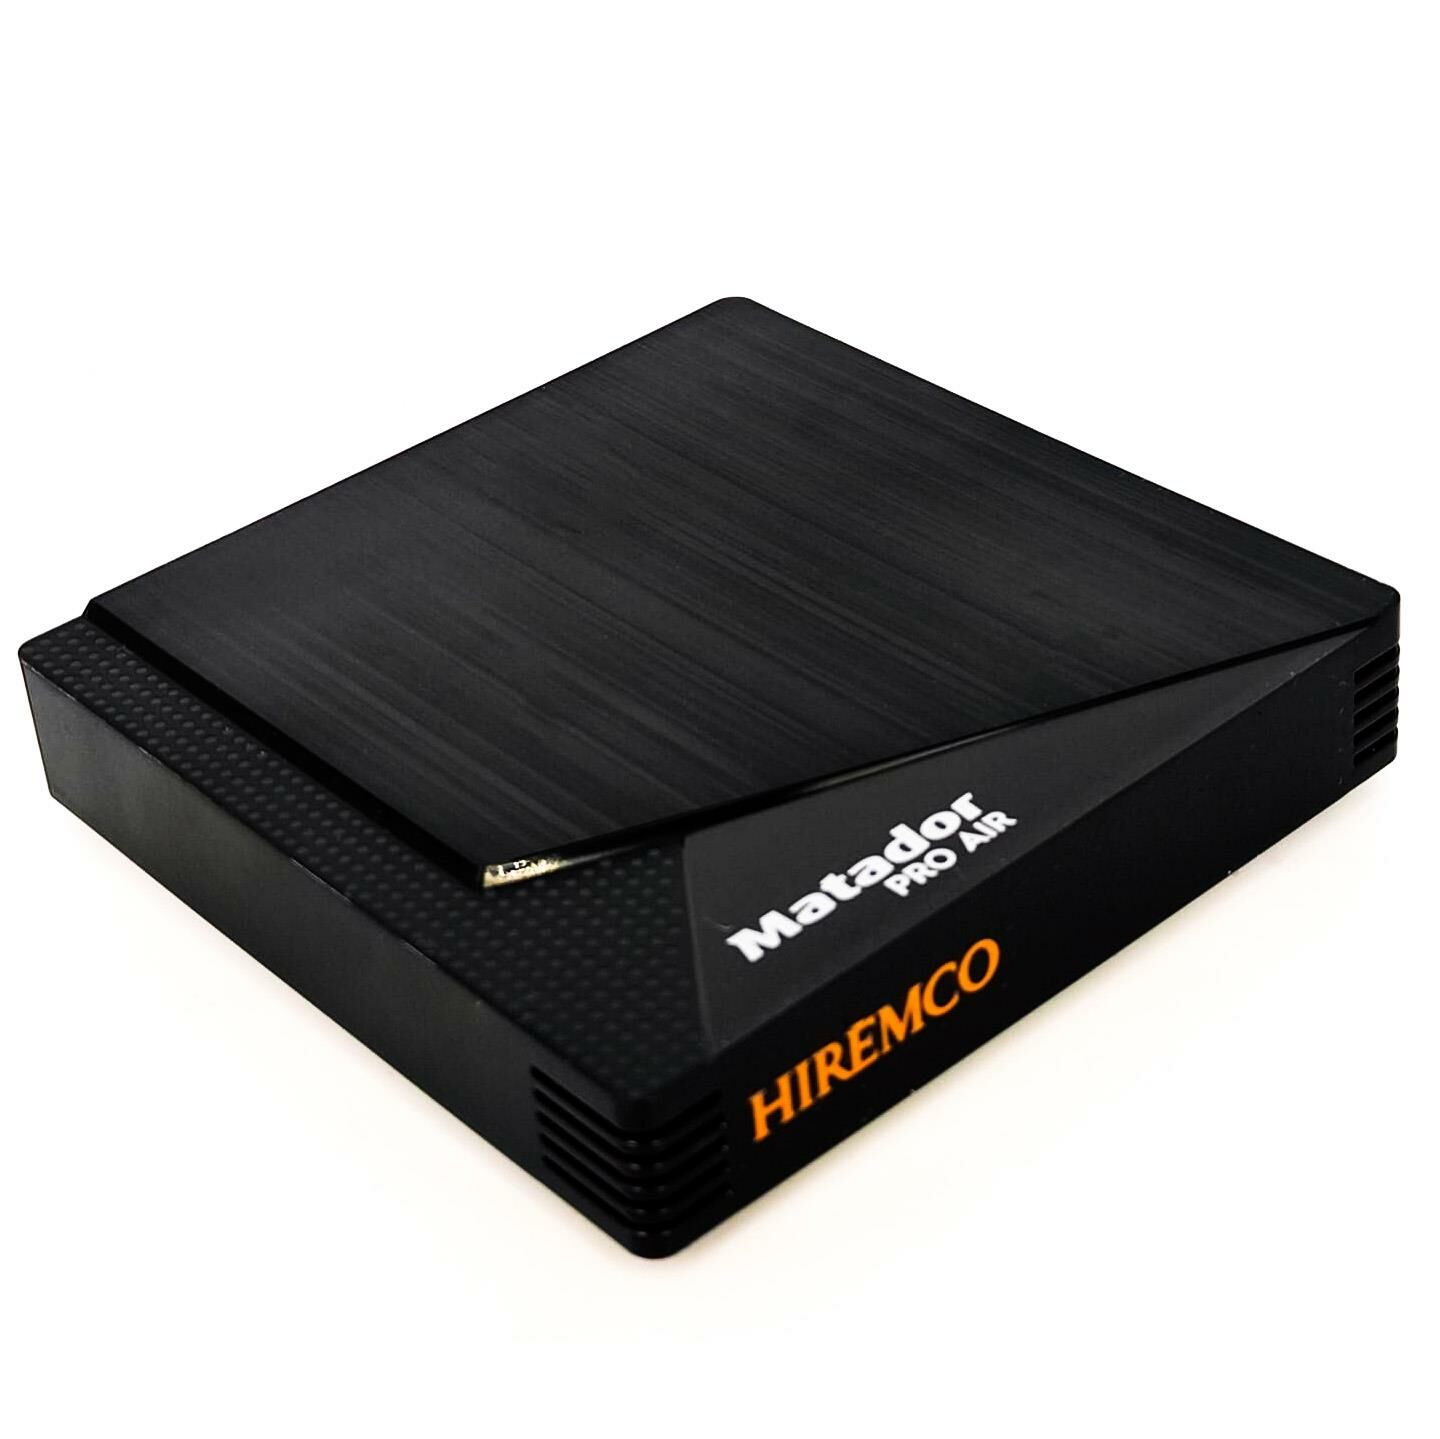 Hiremco Matador PRO AIR Android Box